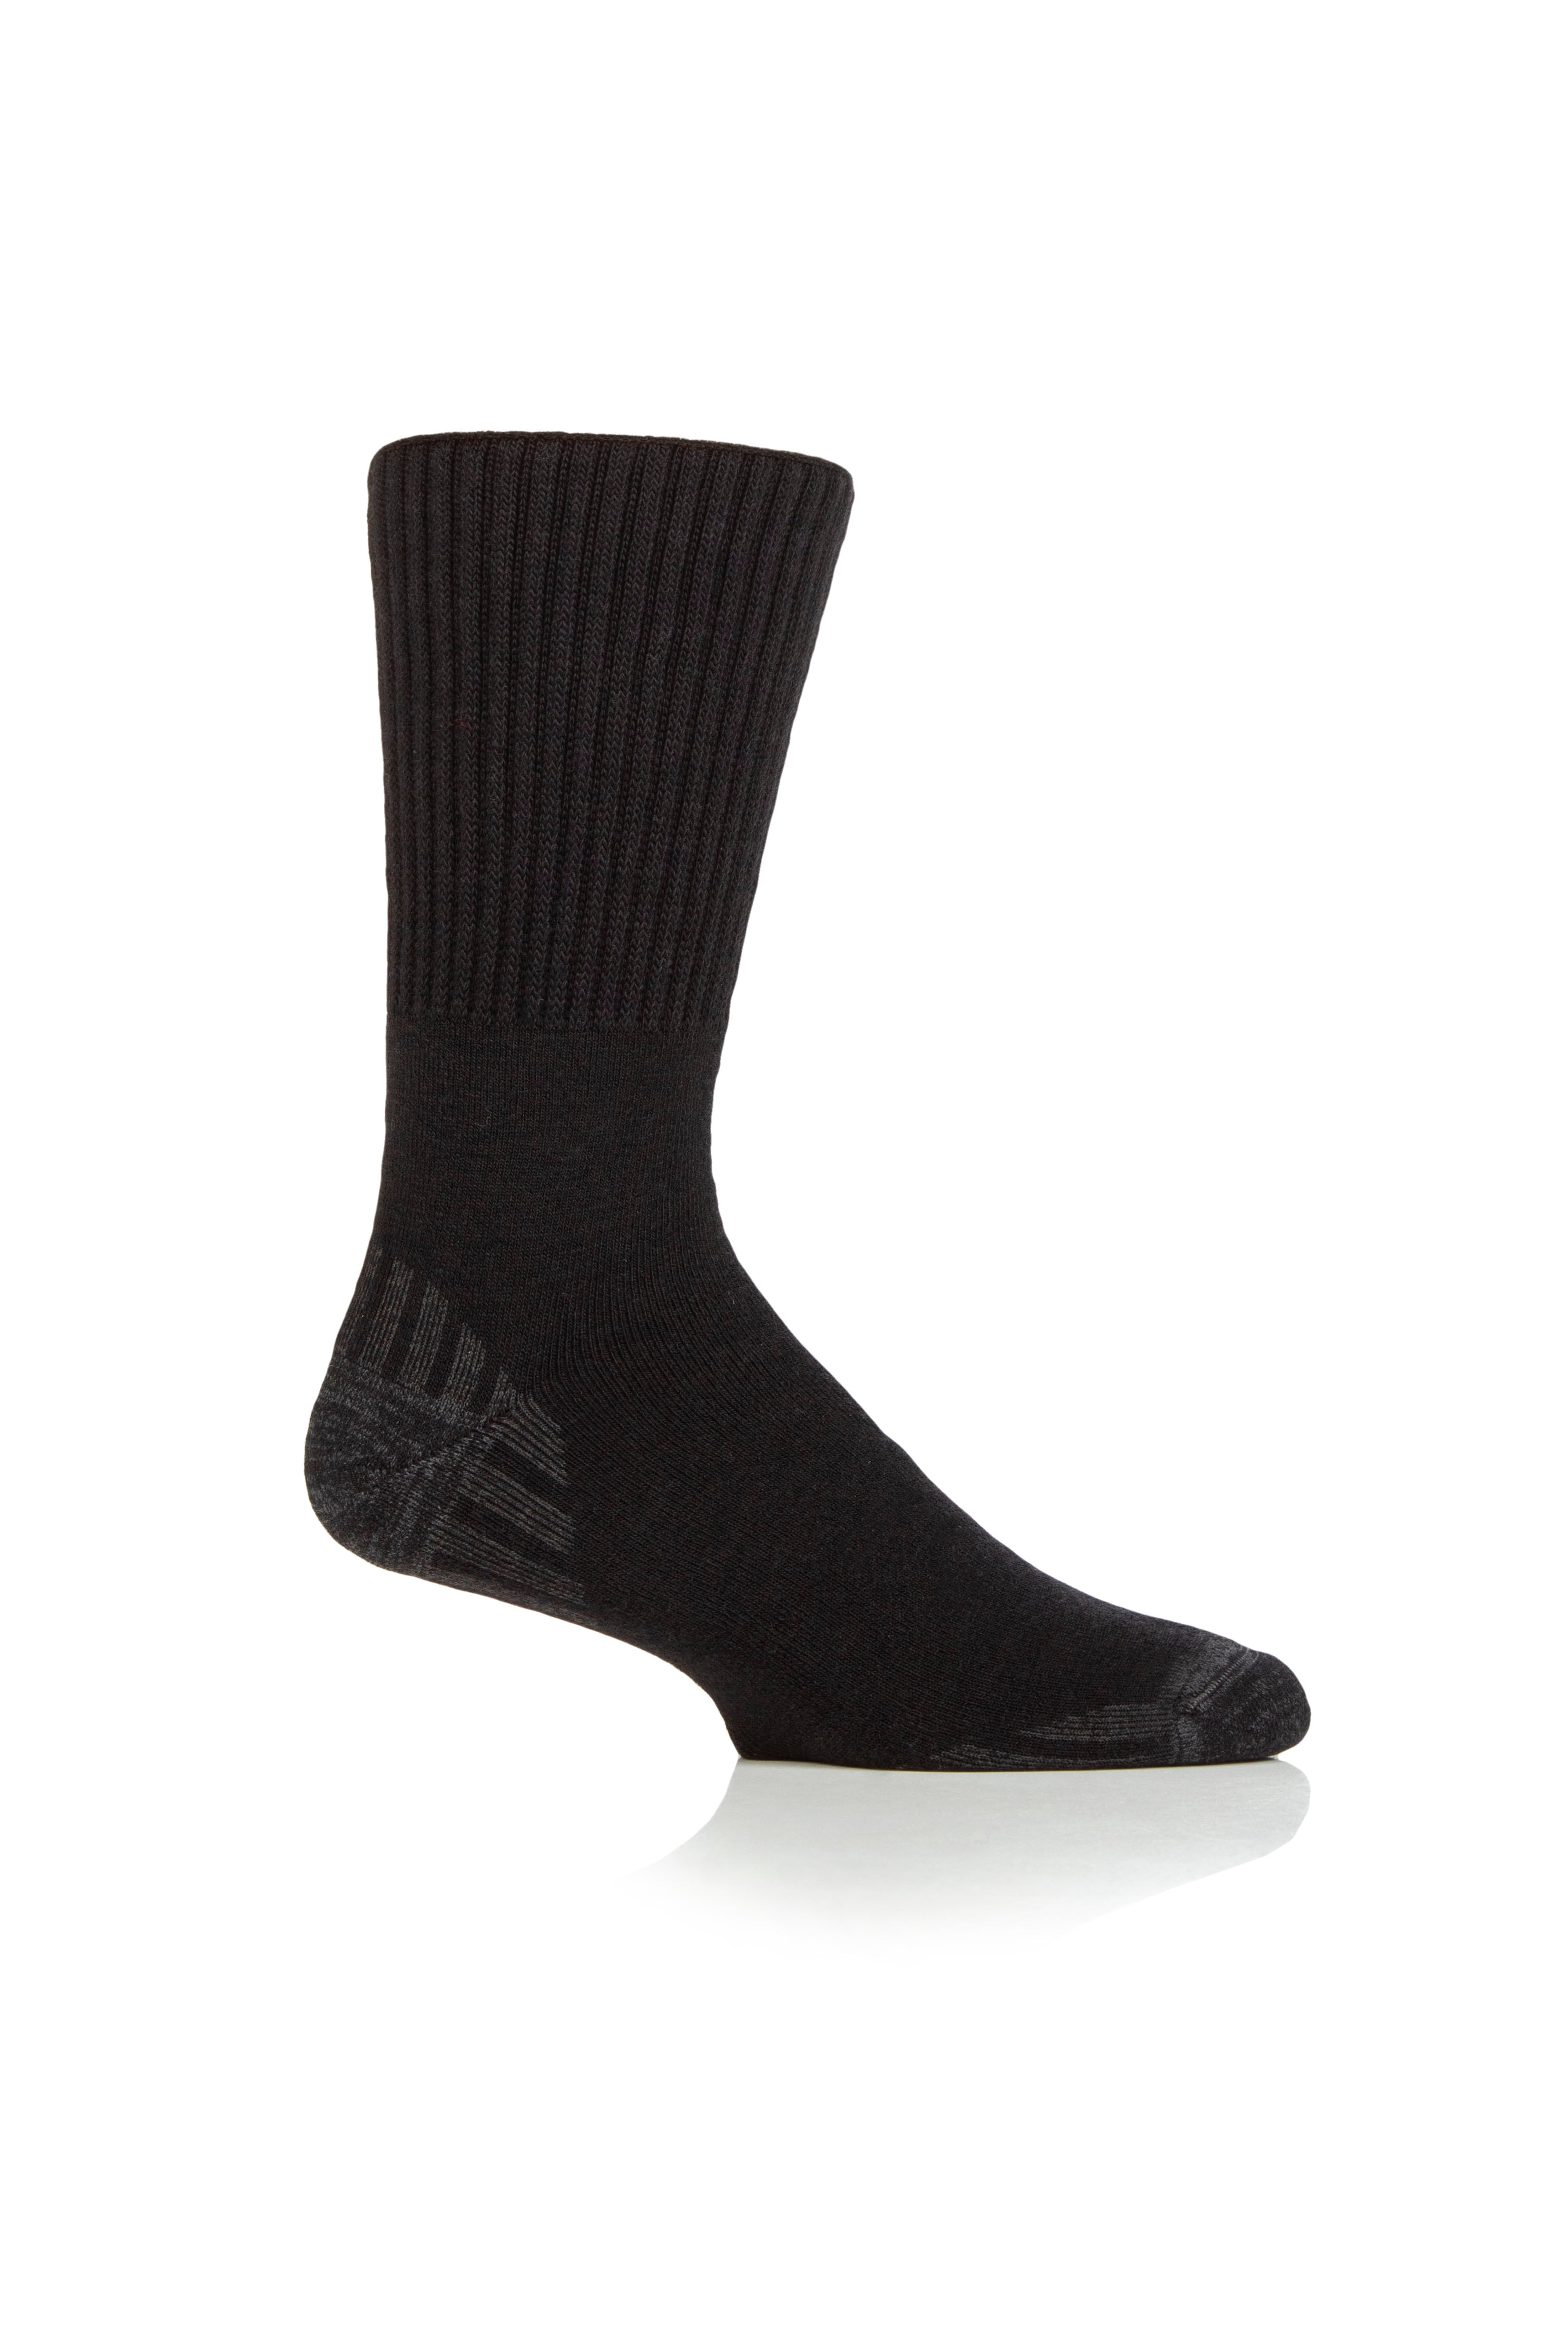 IOMI Footnurse Merino Wool Walker Diabetic Boot Socks